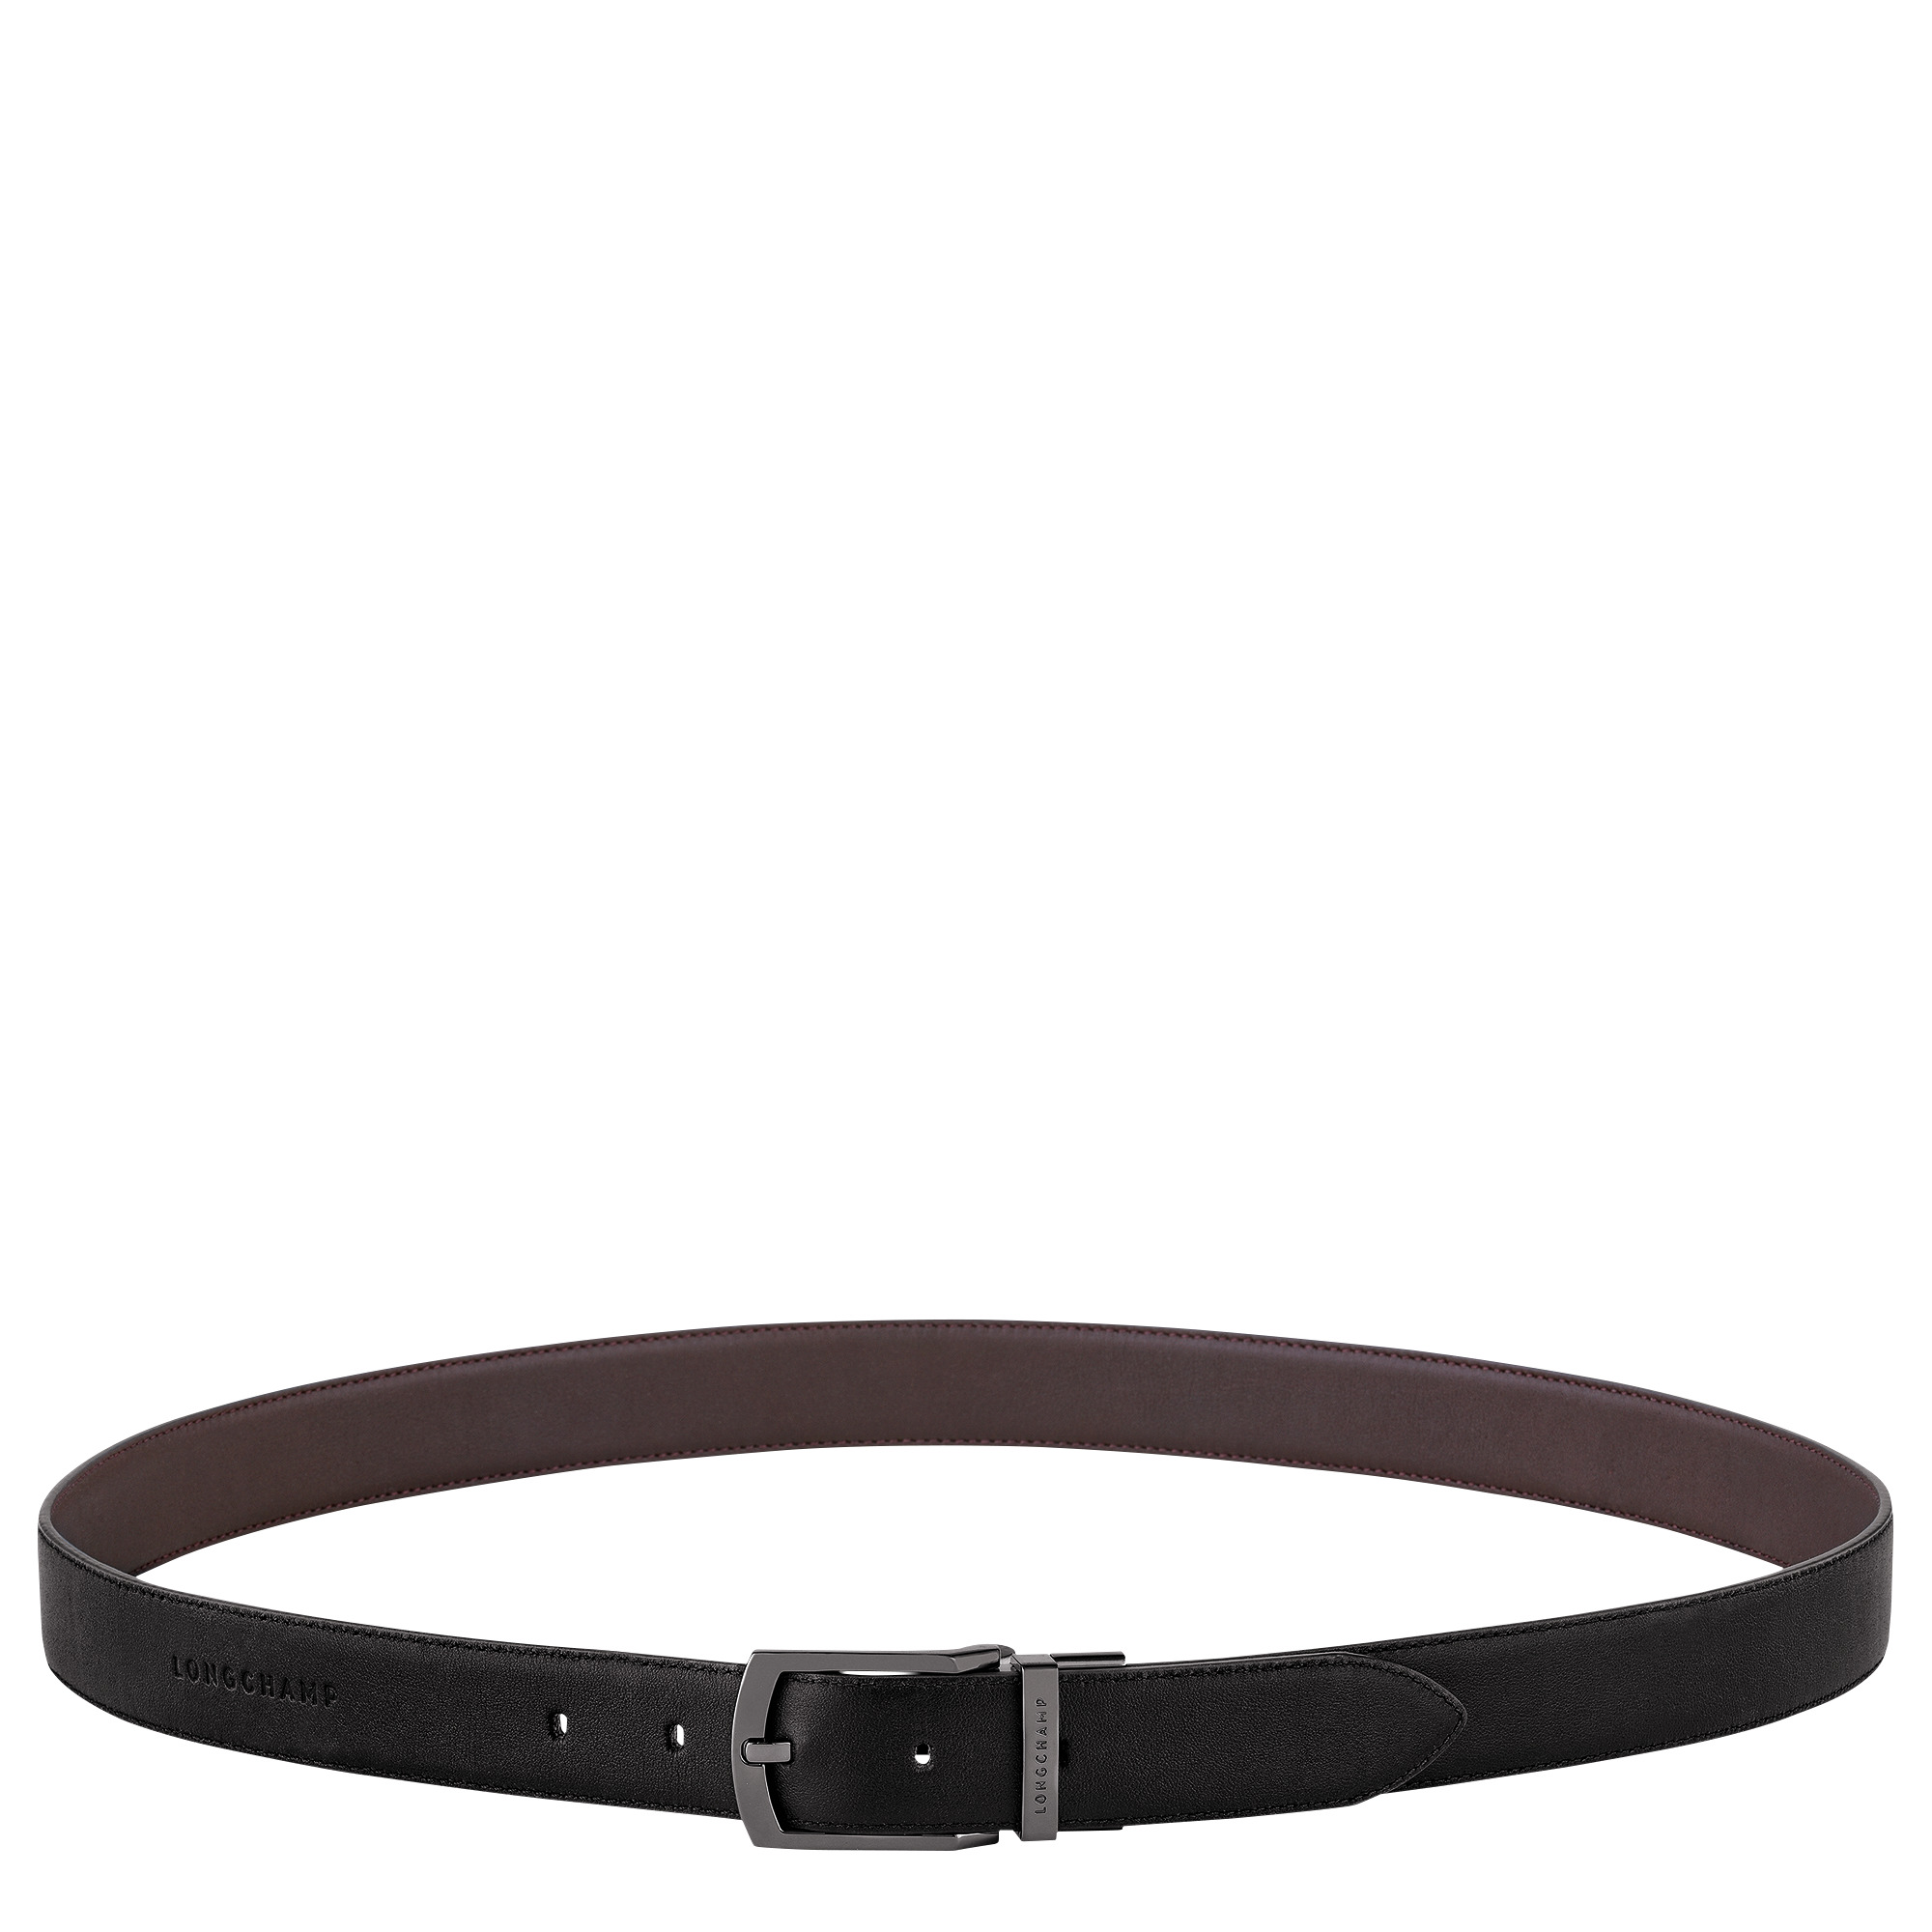 Longchamp sur Seine Men's belt Black/Mocha - Leather - 1